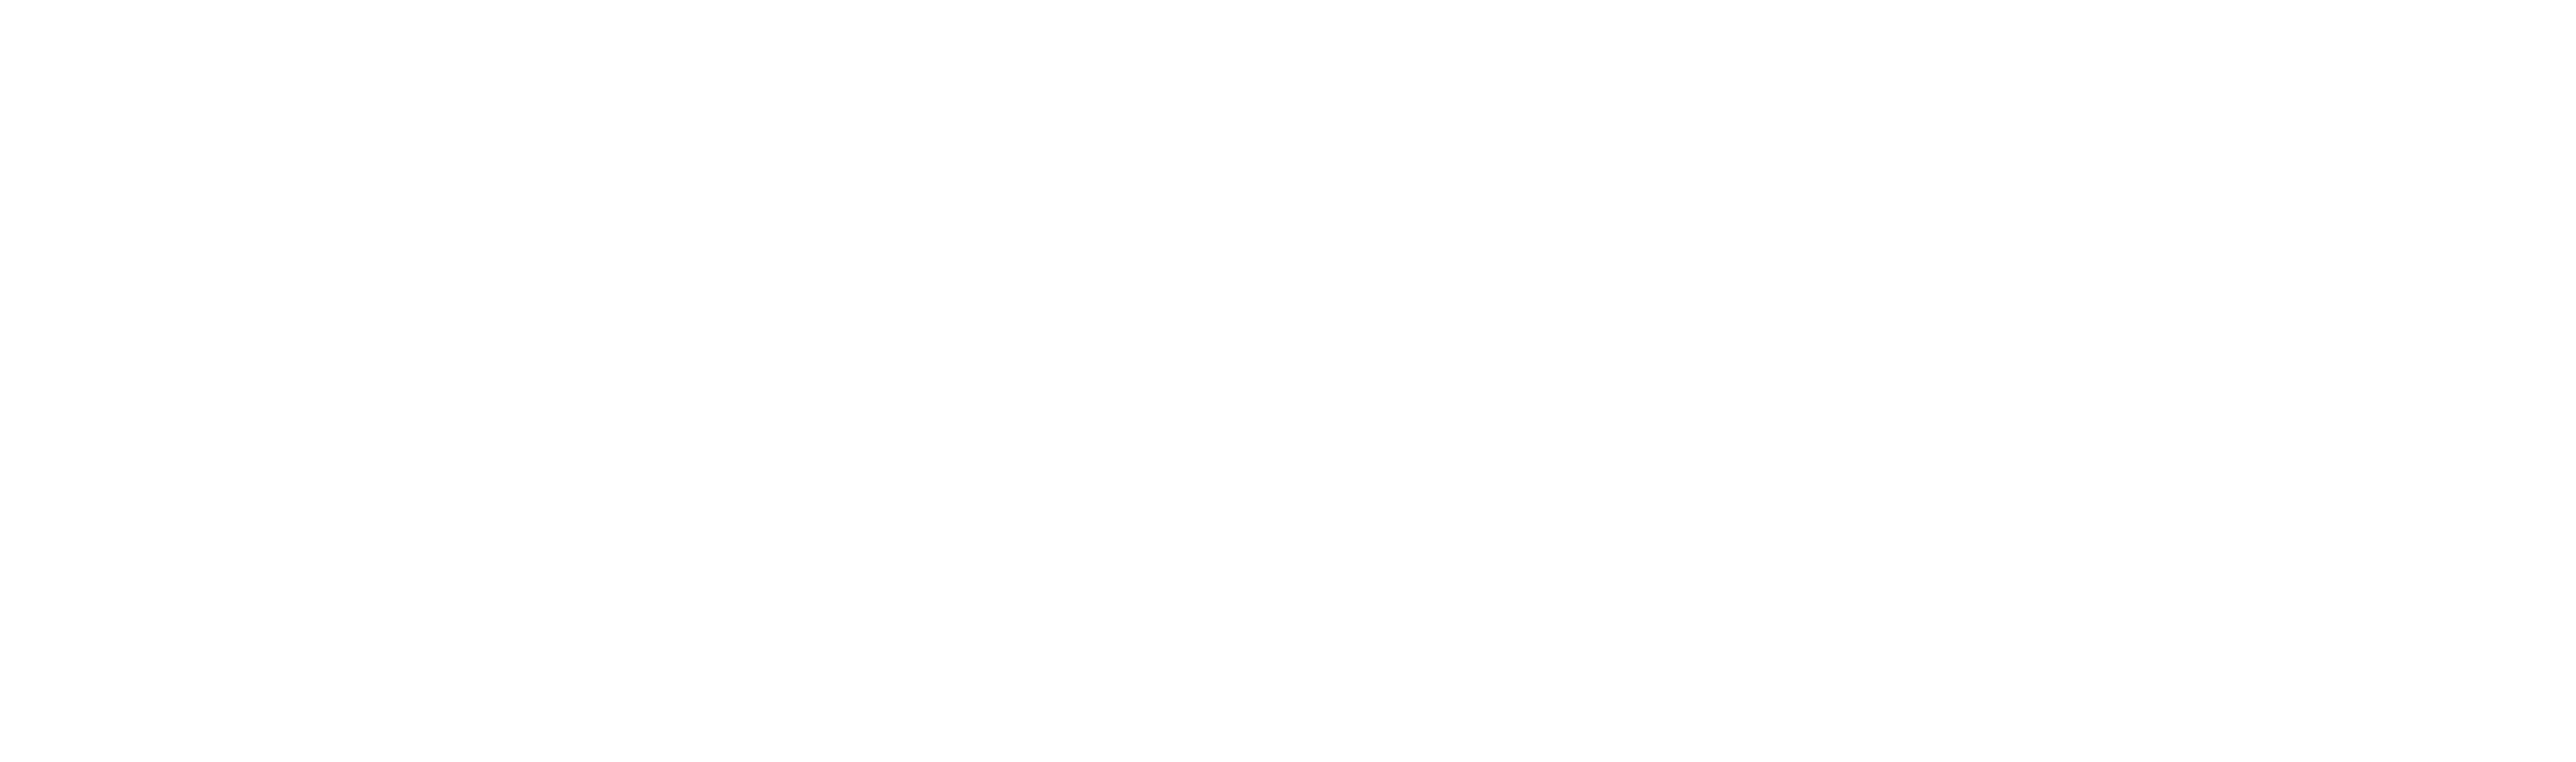 Drug and Alcohol Service - Kirklees white logo